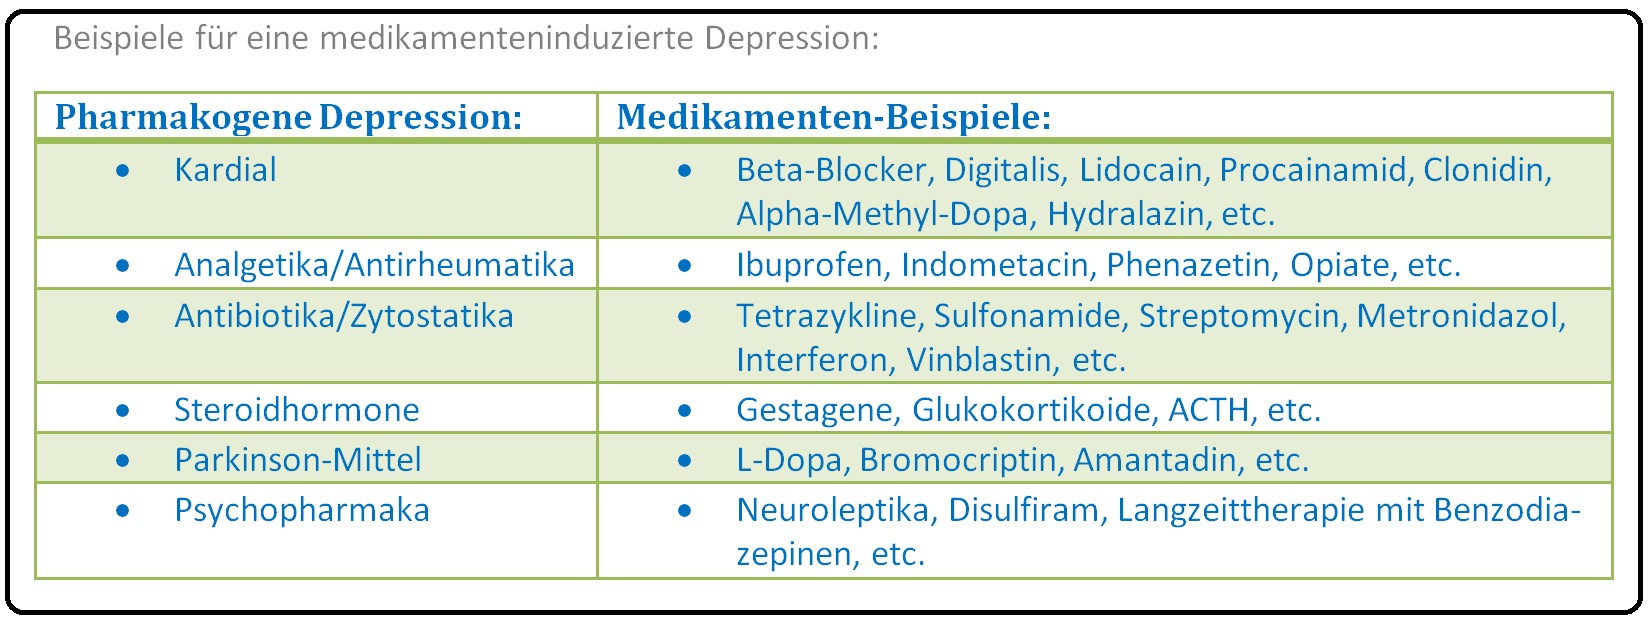 552 Beispiele für eine medikamenteninduzierte Depression